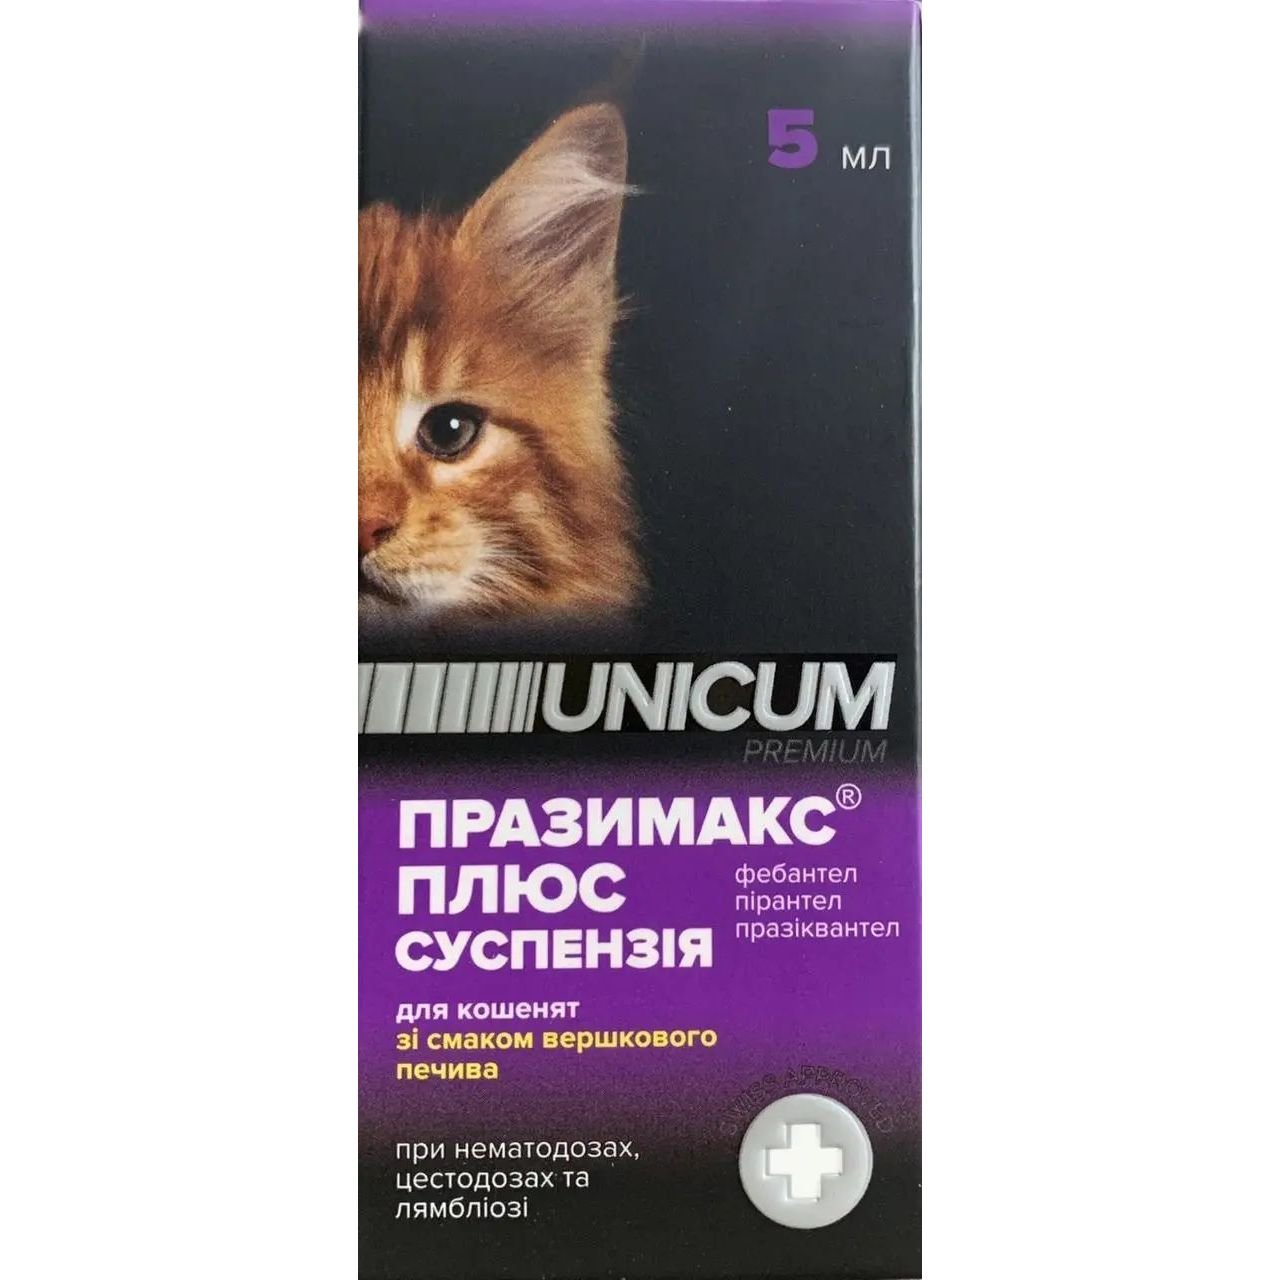 Суспензія Unicum Празімак плюс для кошенят, 5 мл - фото 1